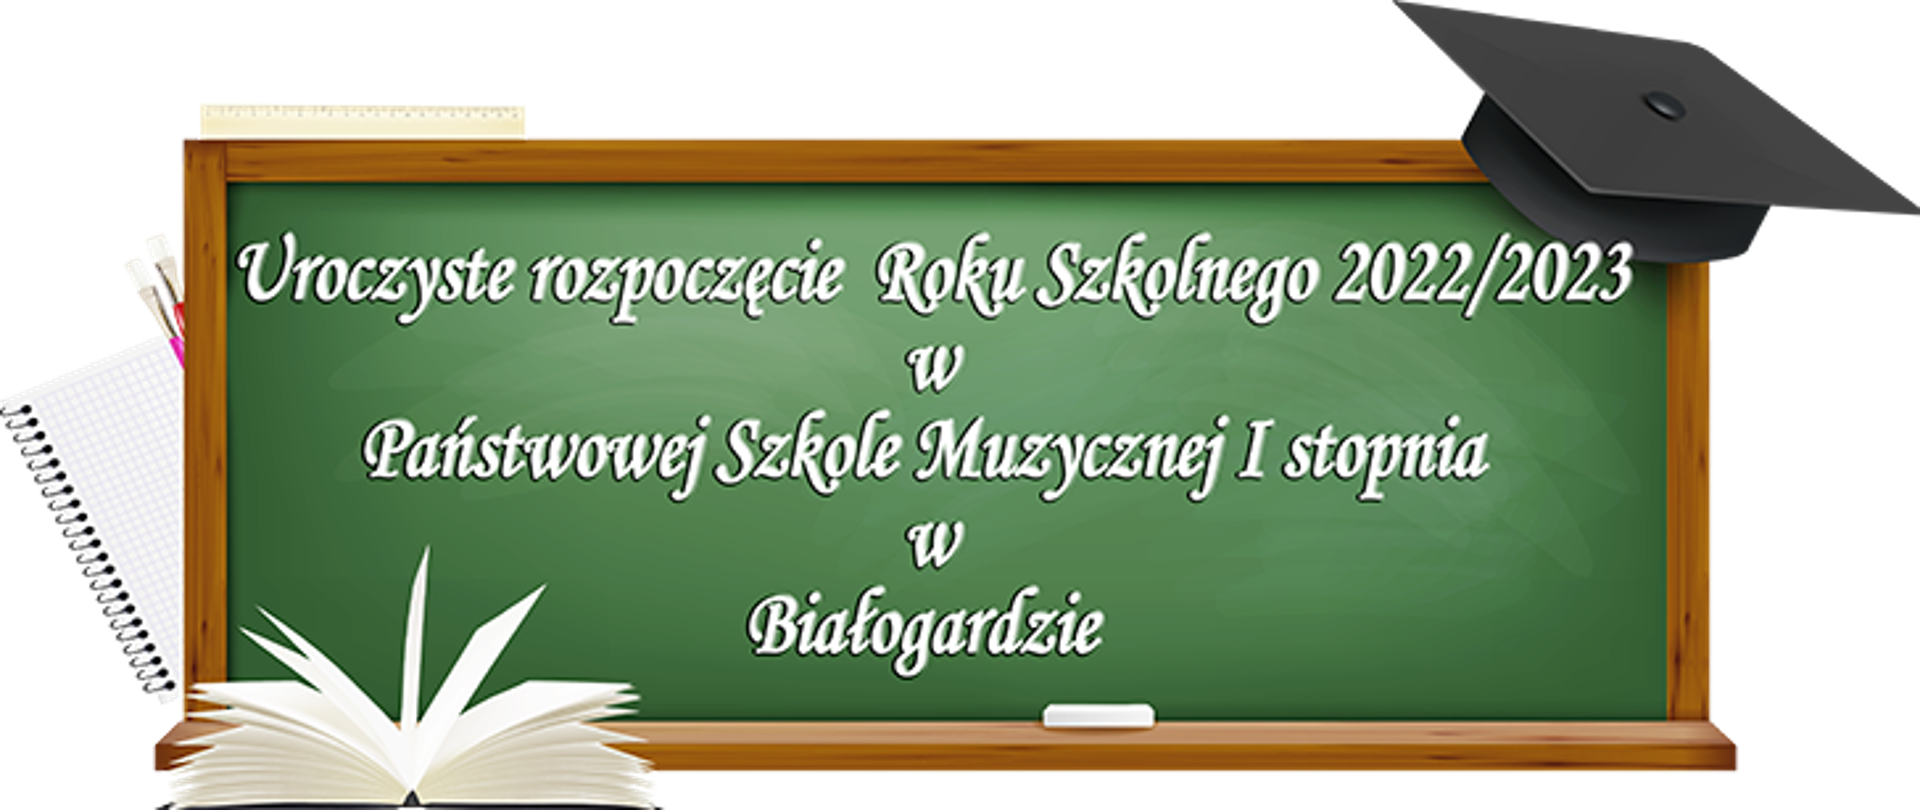 Zielona tablica szkolna z napisem Uroczyste rozpoczęcie roku szkolnego 2022/2023 w Państwowej Szkole Muzycznej I stopnia w Białogardzie